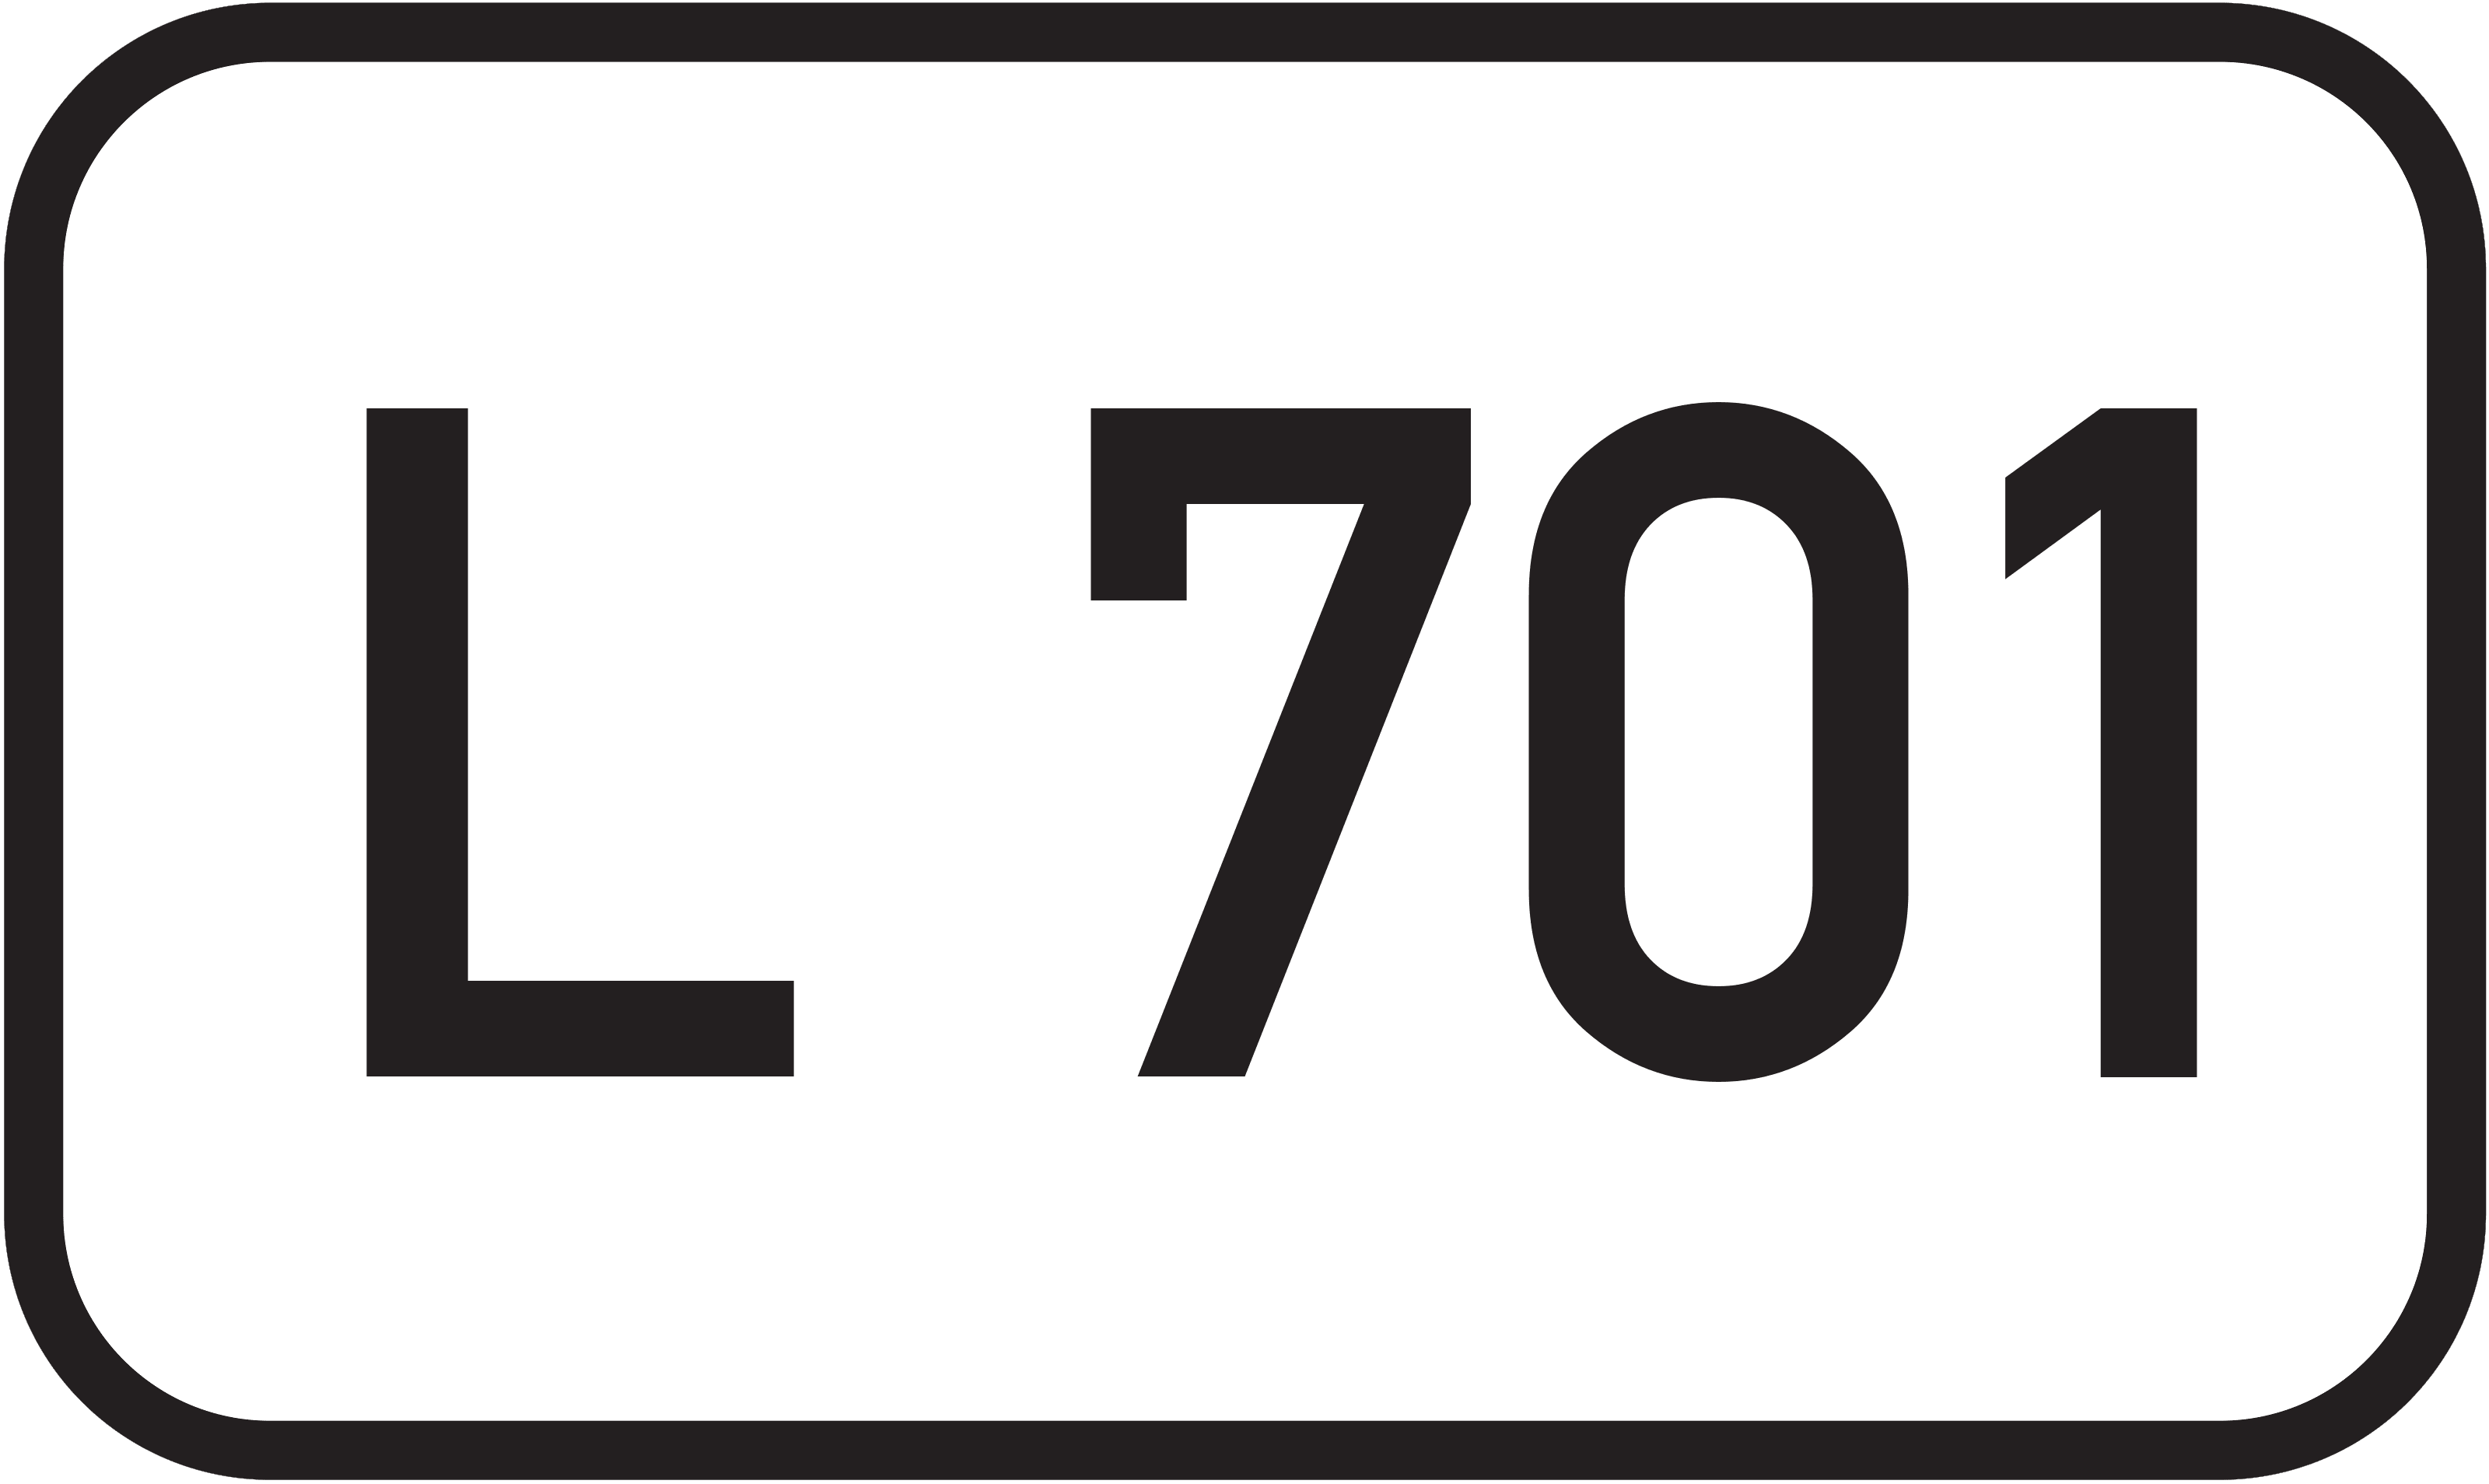 Landesstraße L 701